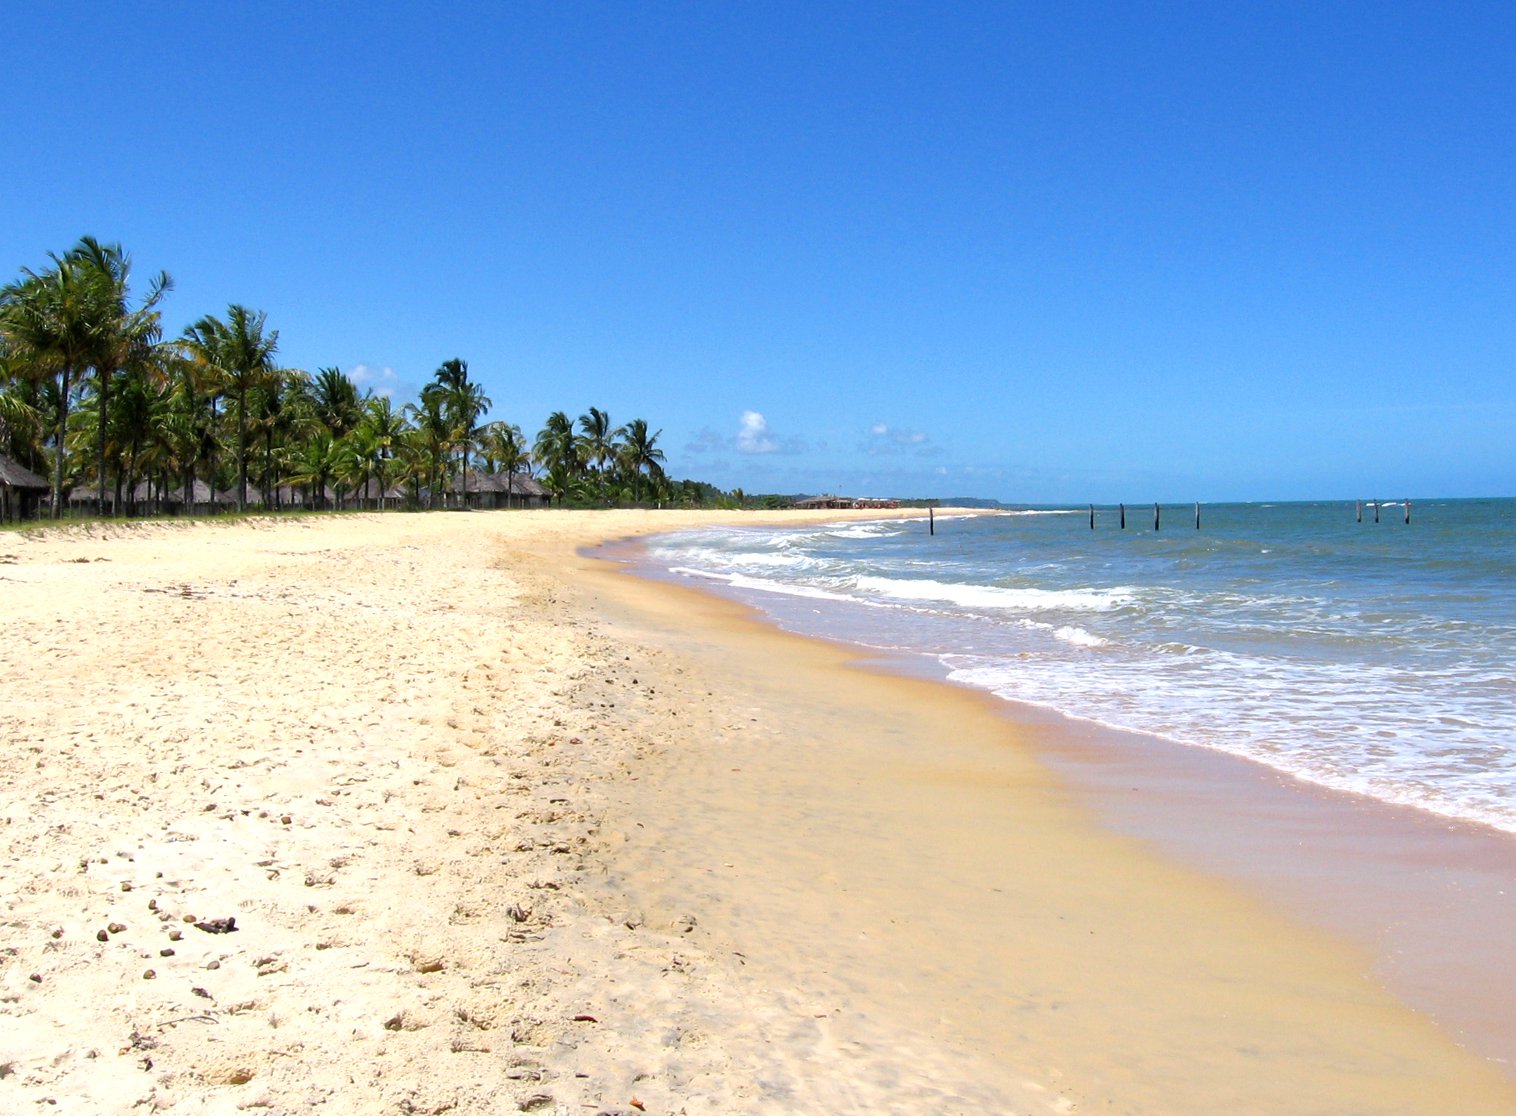 a sandy beach has palm trees along the edge